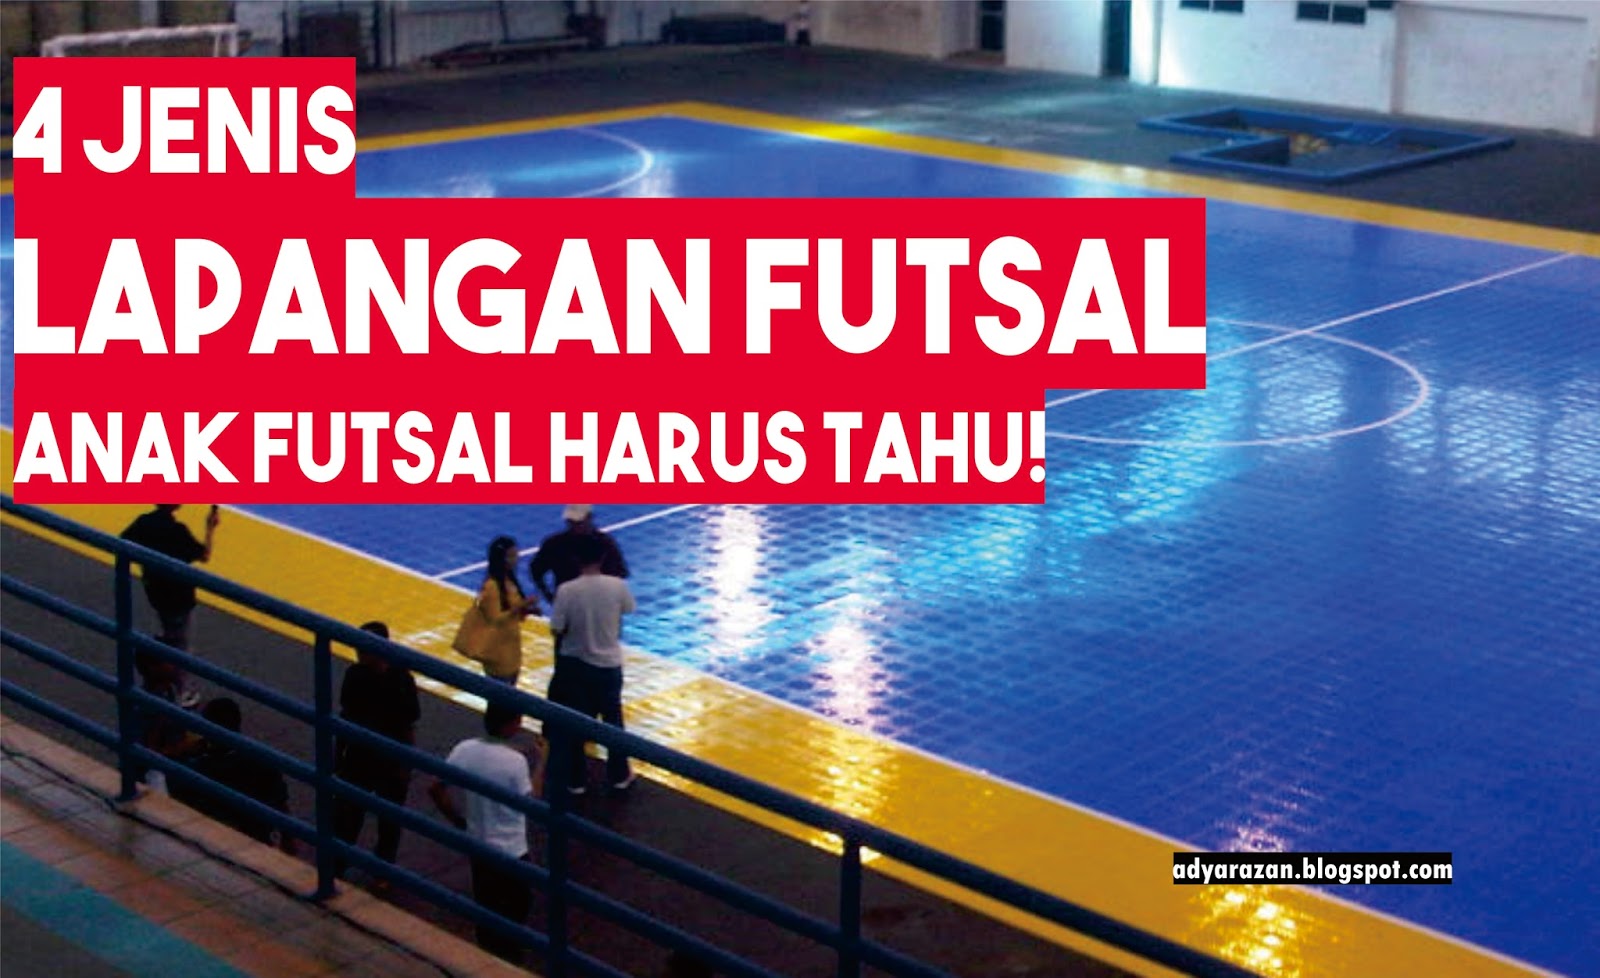 4 Jenis Lapangan Futsal Anak Futsal Harus Tau Adya Razan